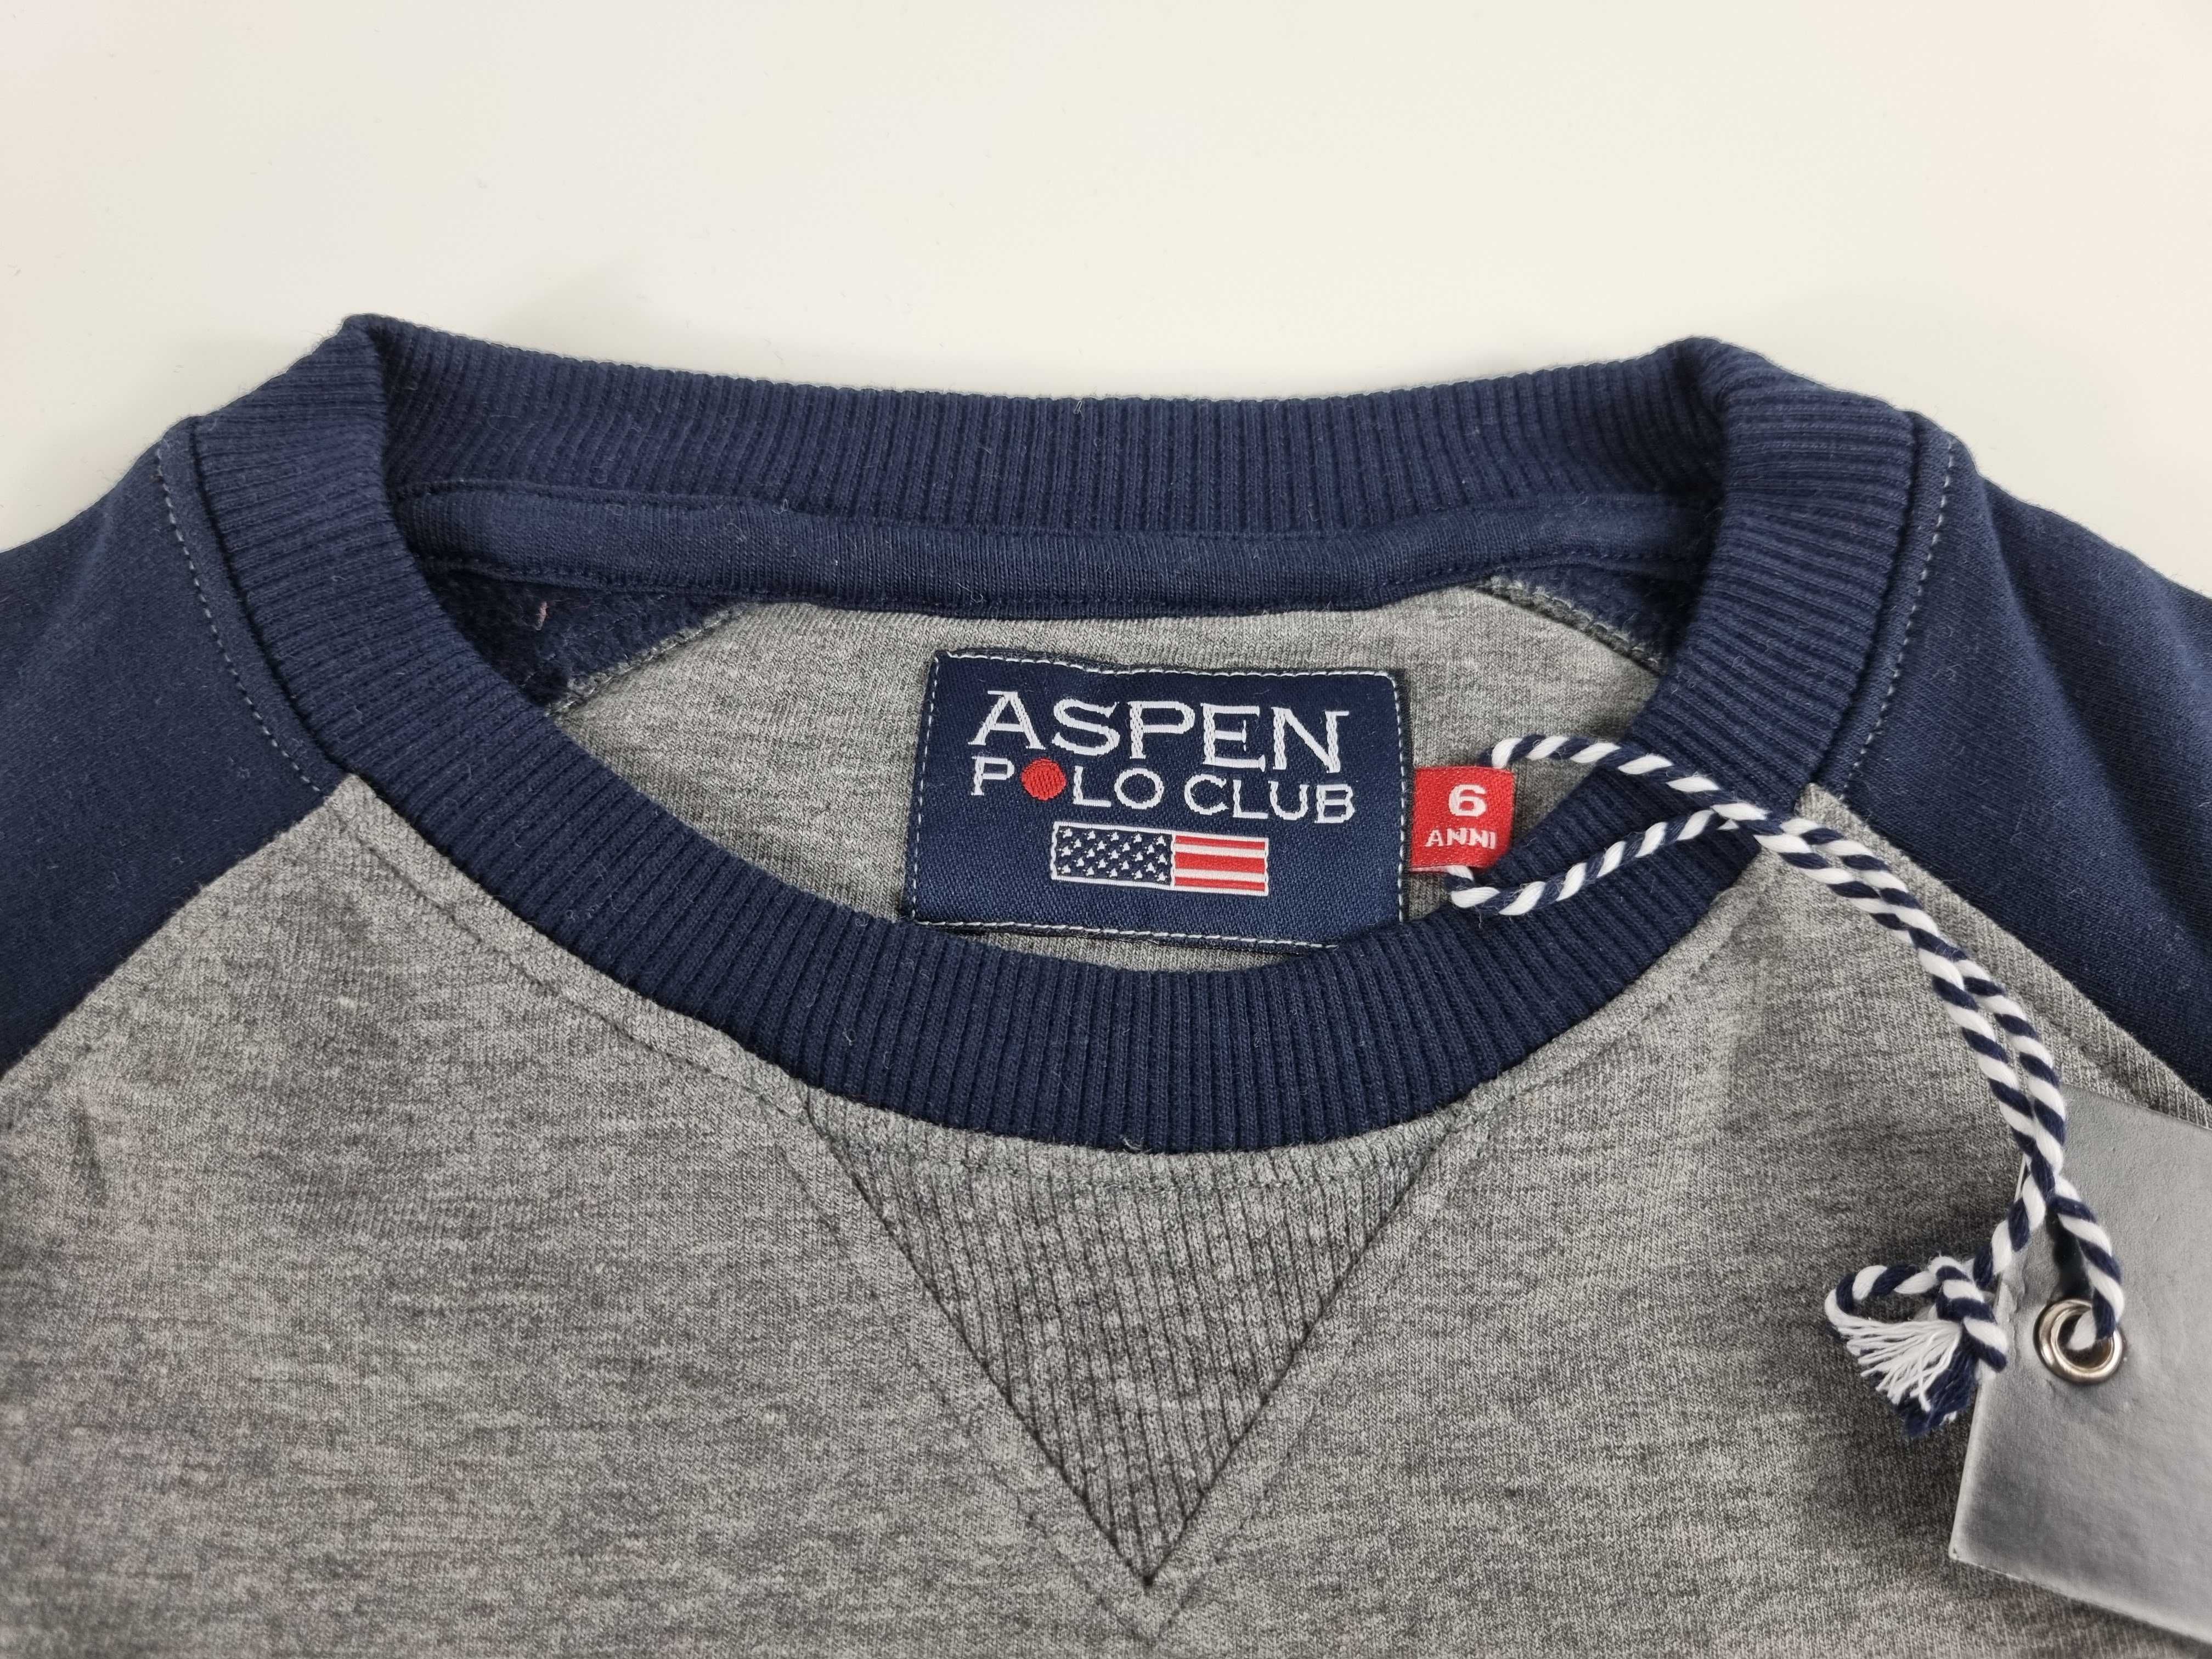 Bluza dla chłopca 6 lat Aspen Polo Club, długi rękaw